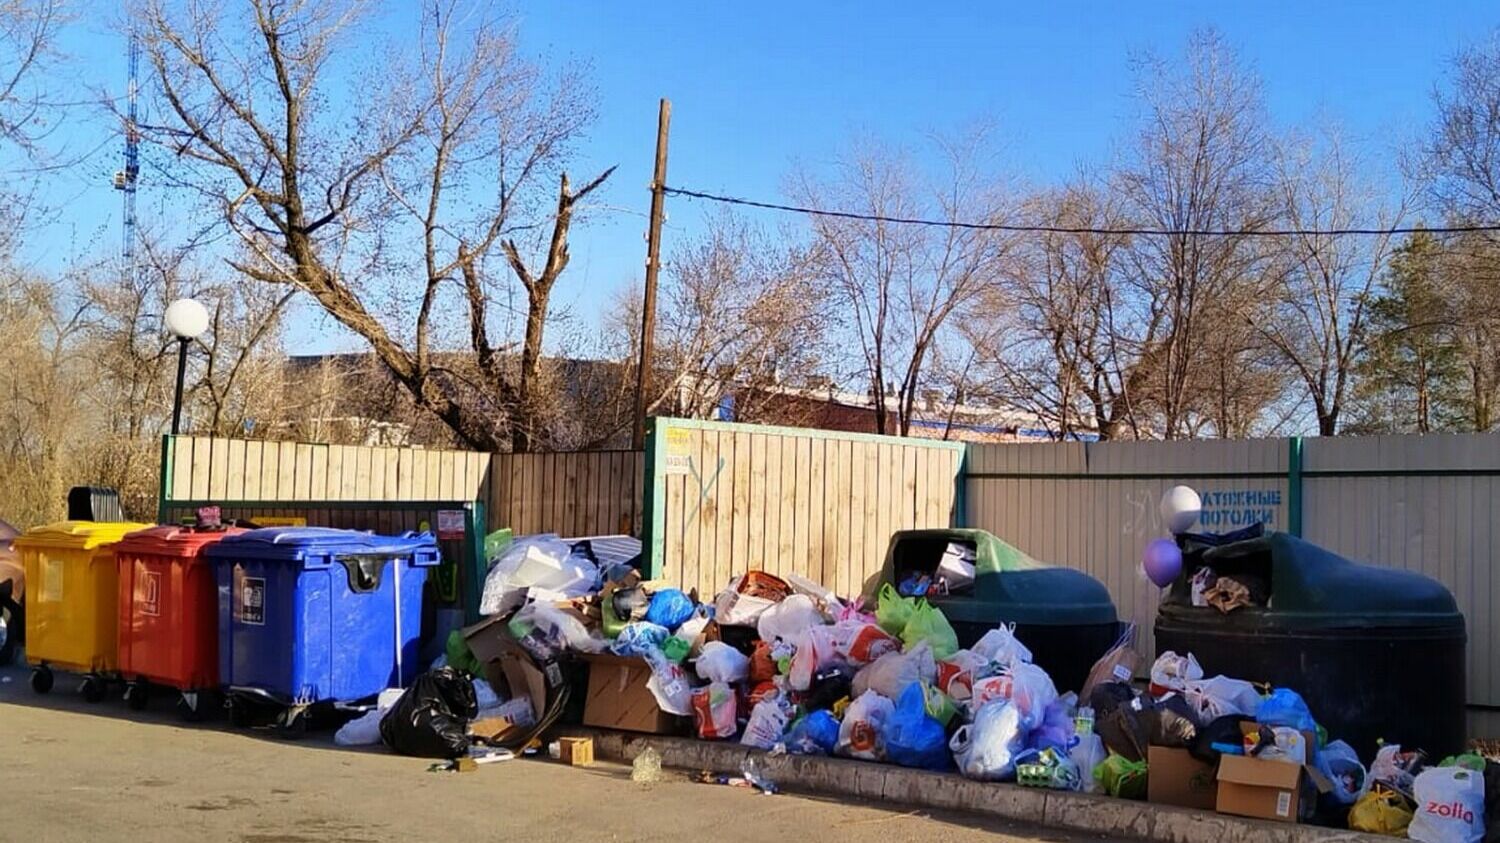 Типичная для Оренбуржья картина: красивые яркие баки среди гор невывезенного мусора